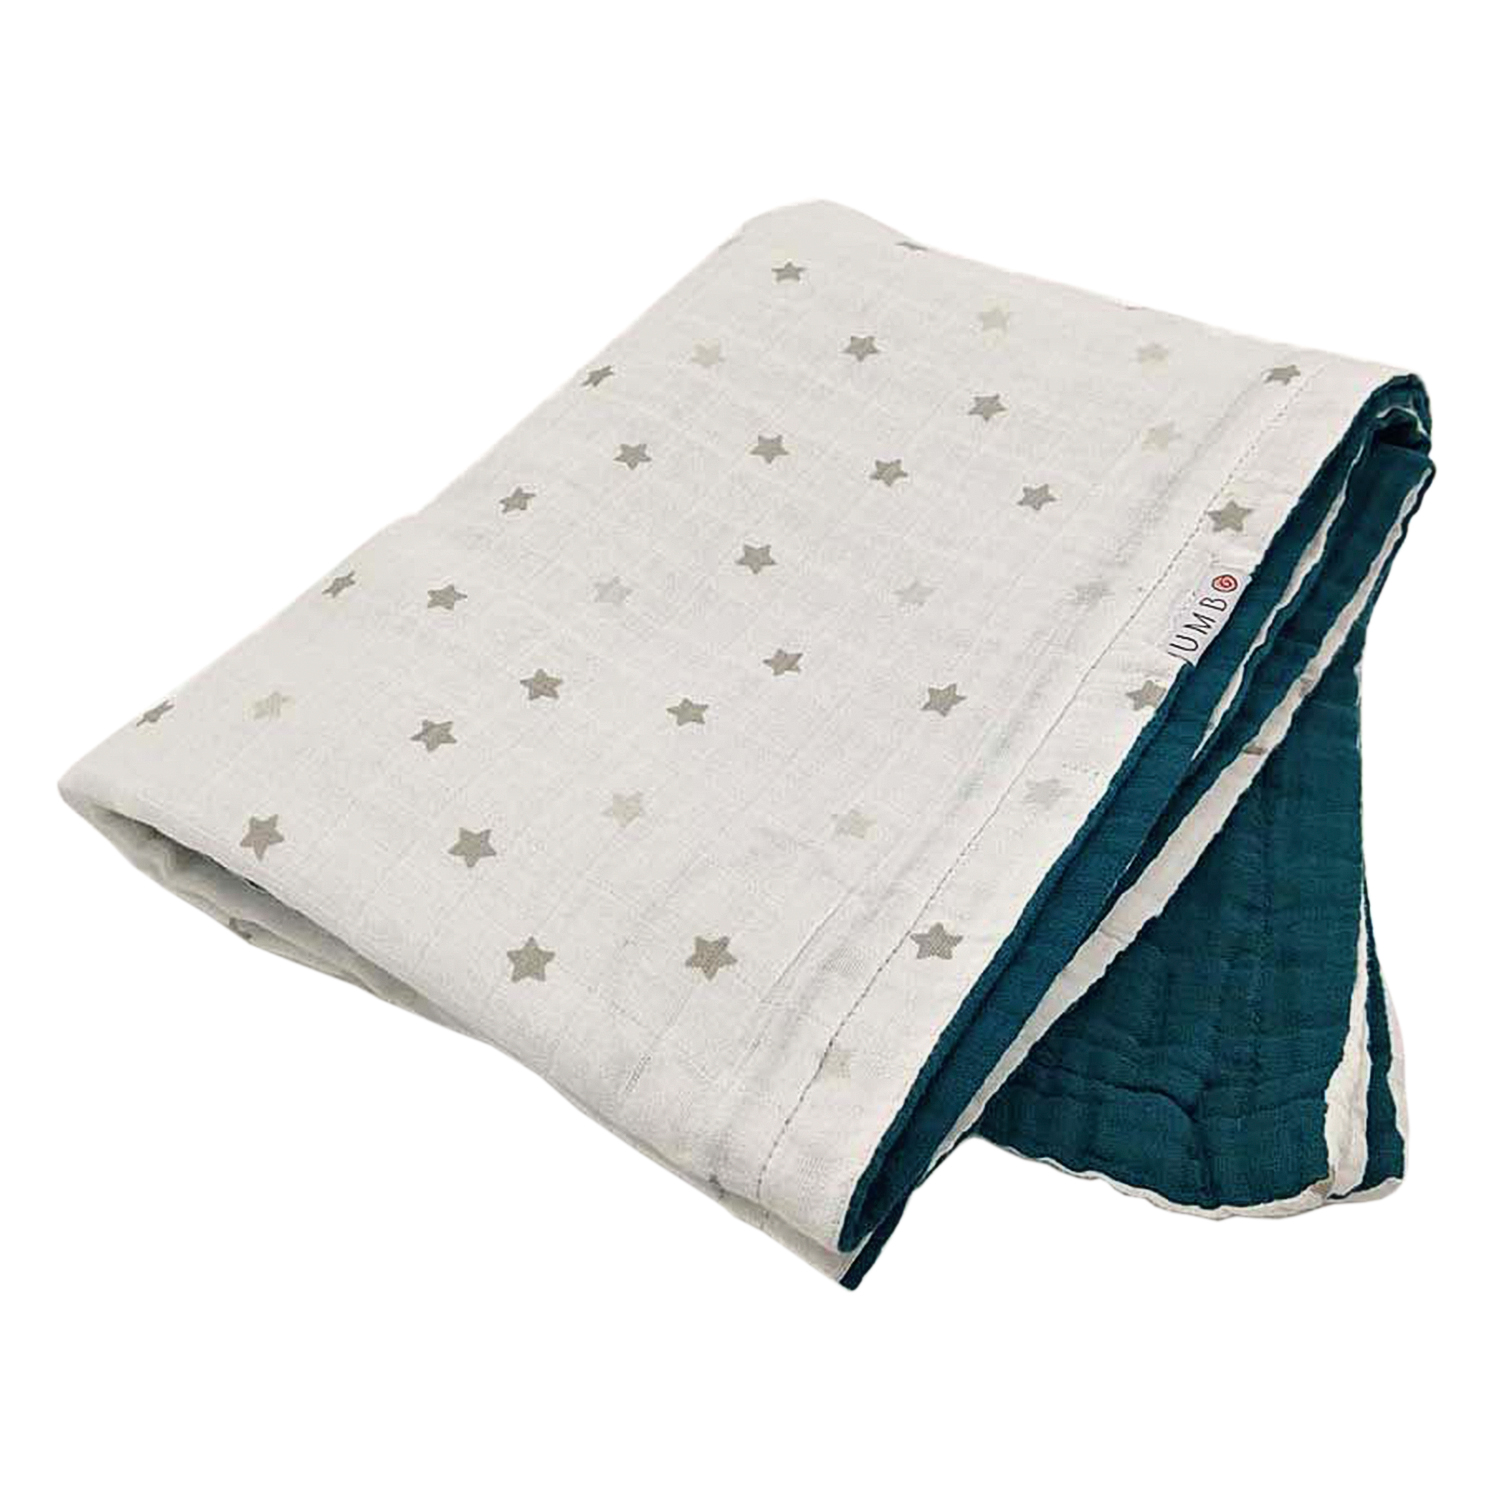 Муслиновое одеяло "Вечерний залив и мерцающие звезды", 118х90 см UMBO детское, Нет цвета, 100%органический хлопок  - купить со скидкой